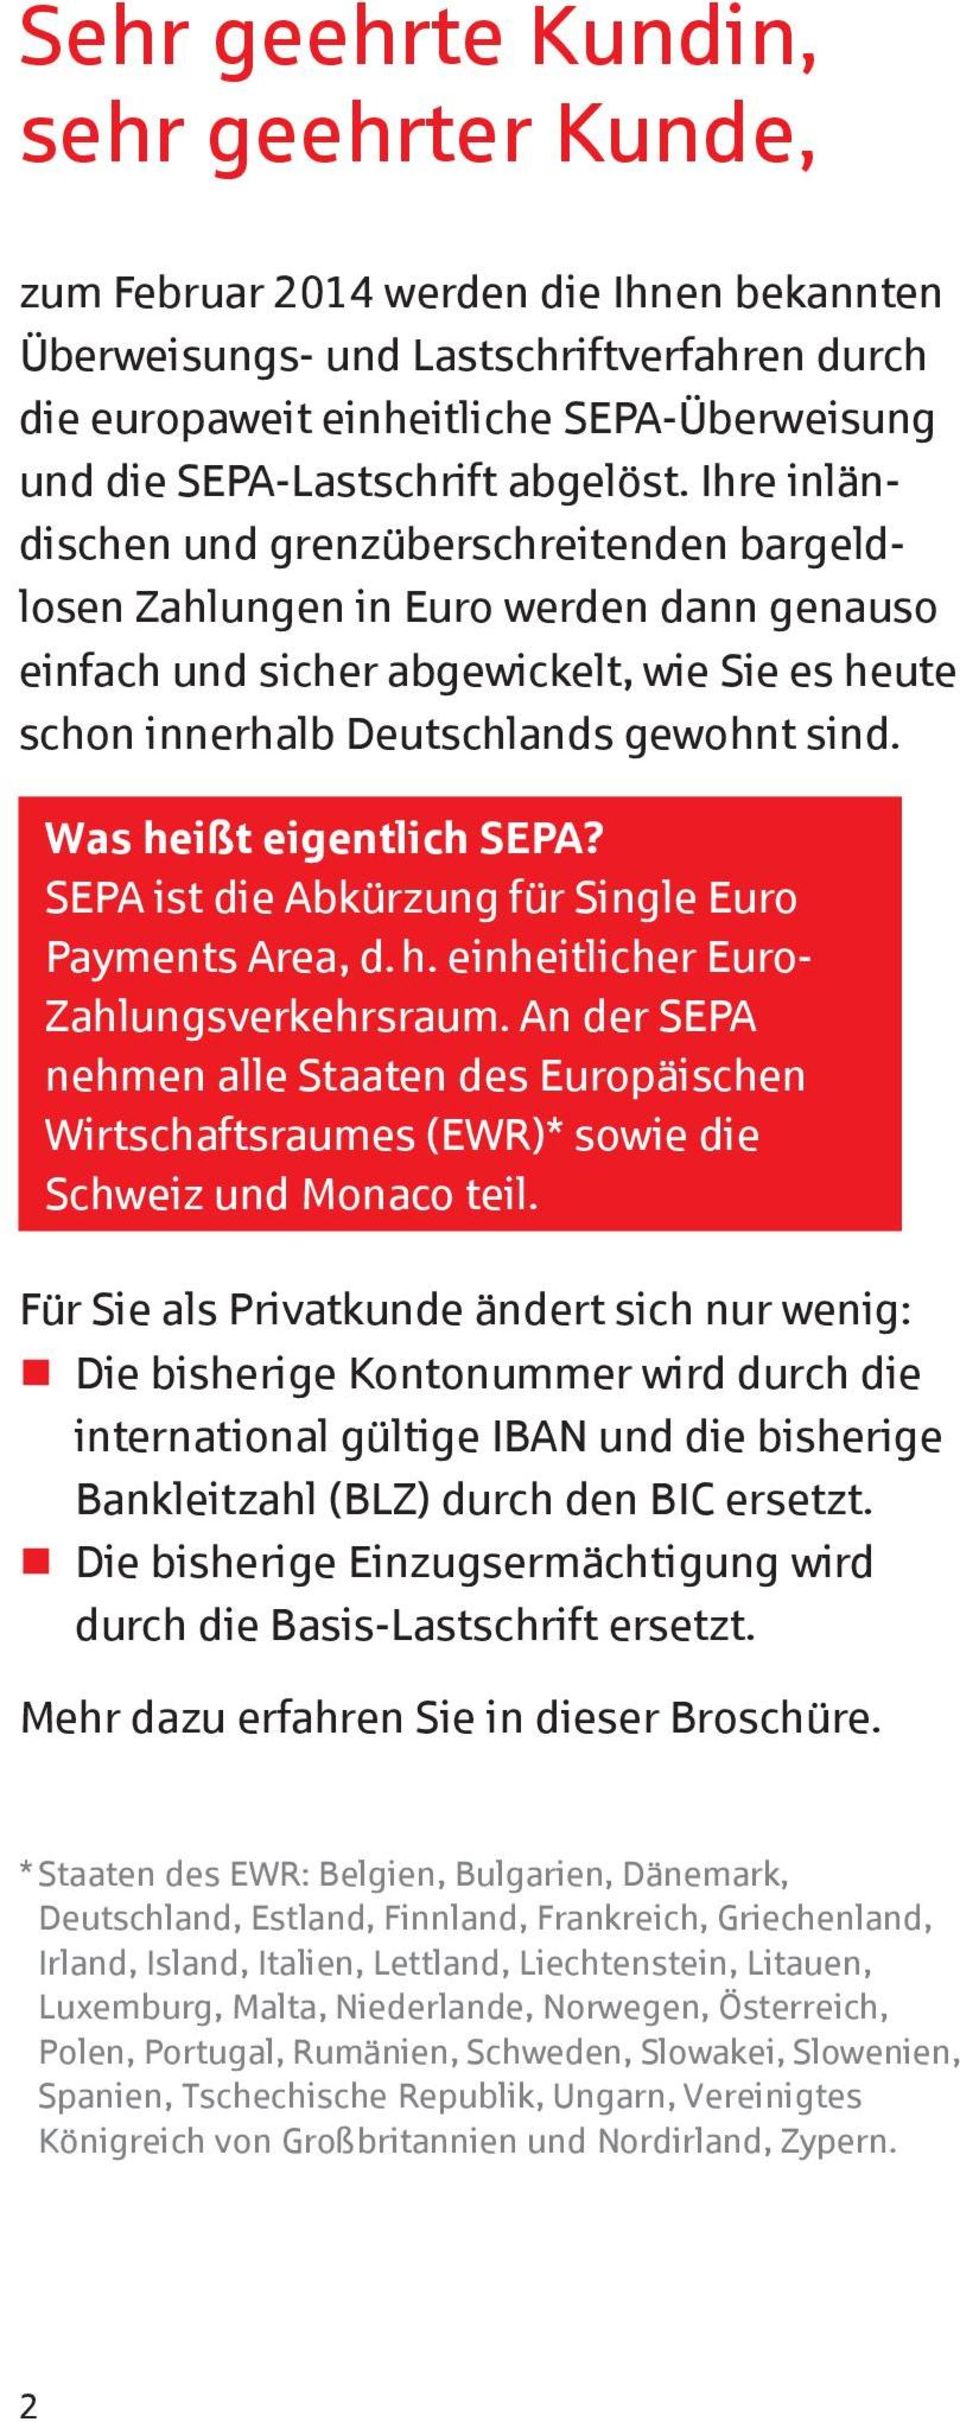 Ihre inländischen und grenzüberschreitenden bargeldlosen Zahlungen in Euro werden dann genauso einfach und sicher abgewickelt, wie Sie es heute schon innerhalb Deutschlands gewohnt sind.